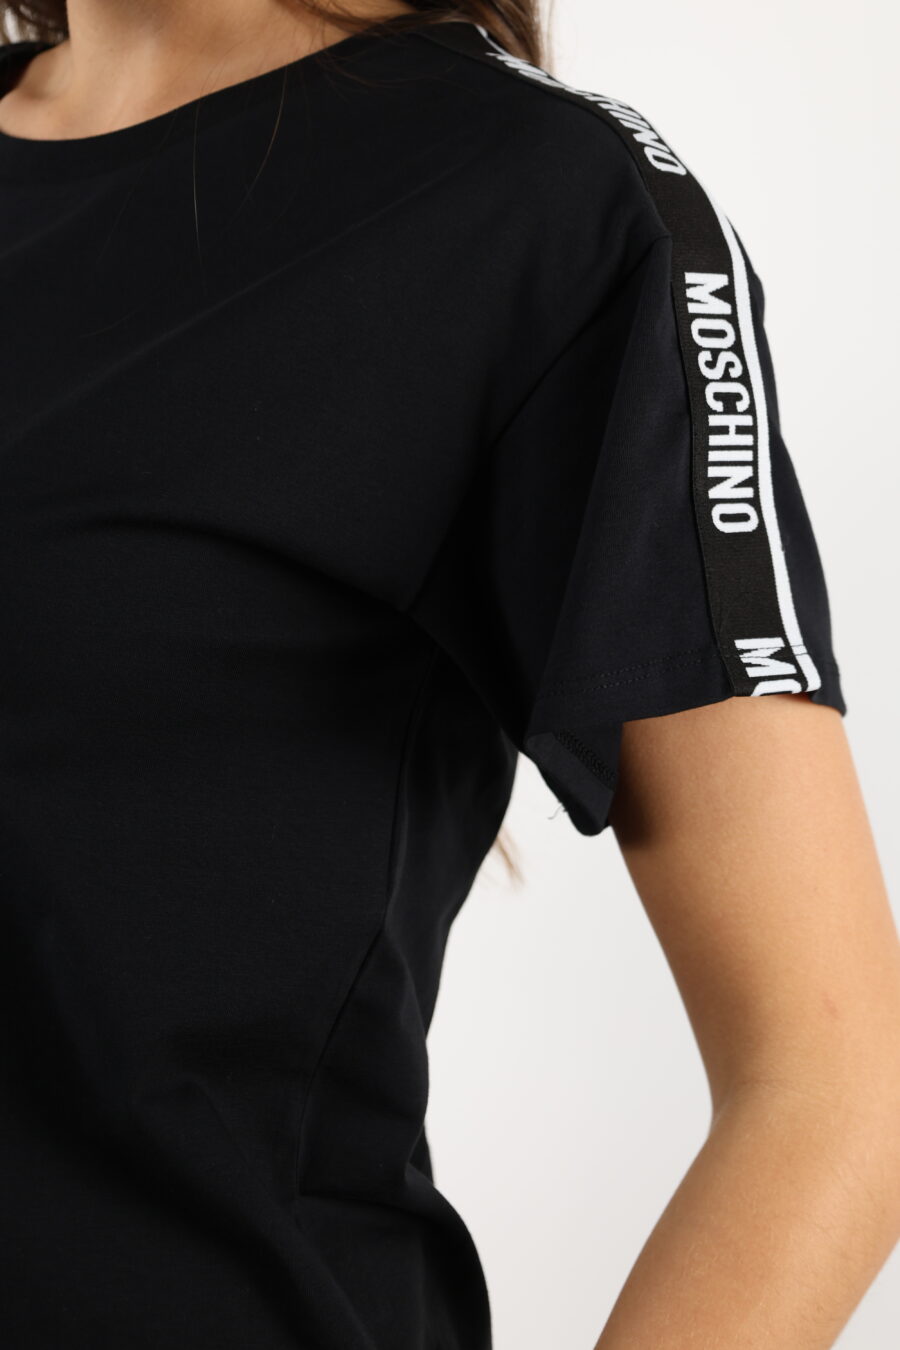 Camiseta negra corta con logo en cinta hombros blanco - 110497